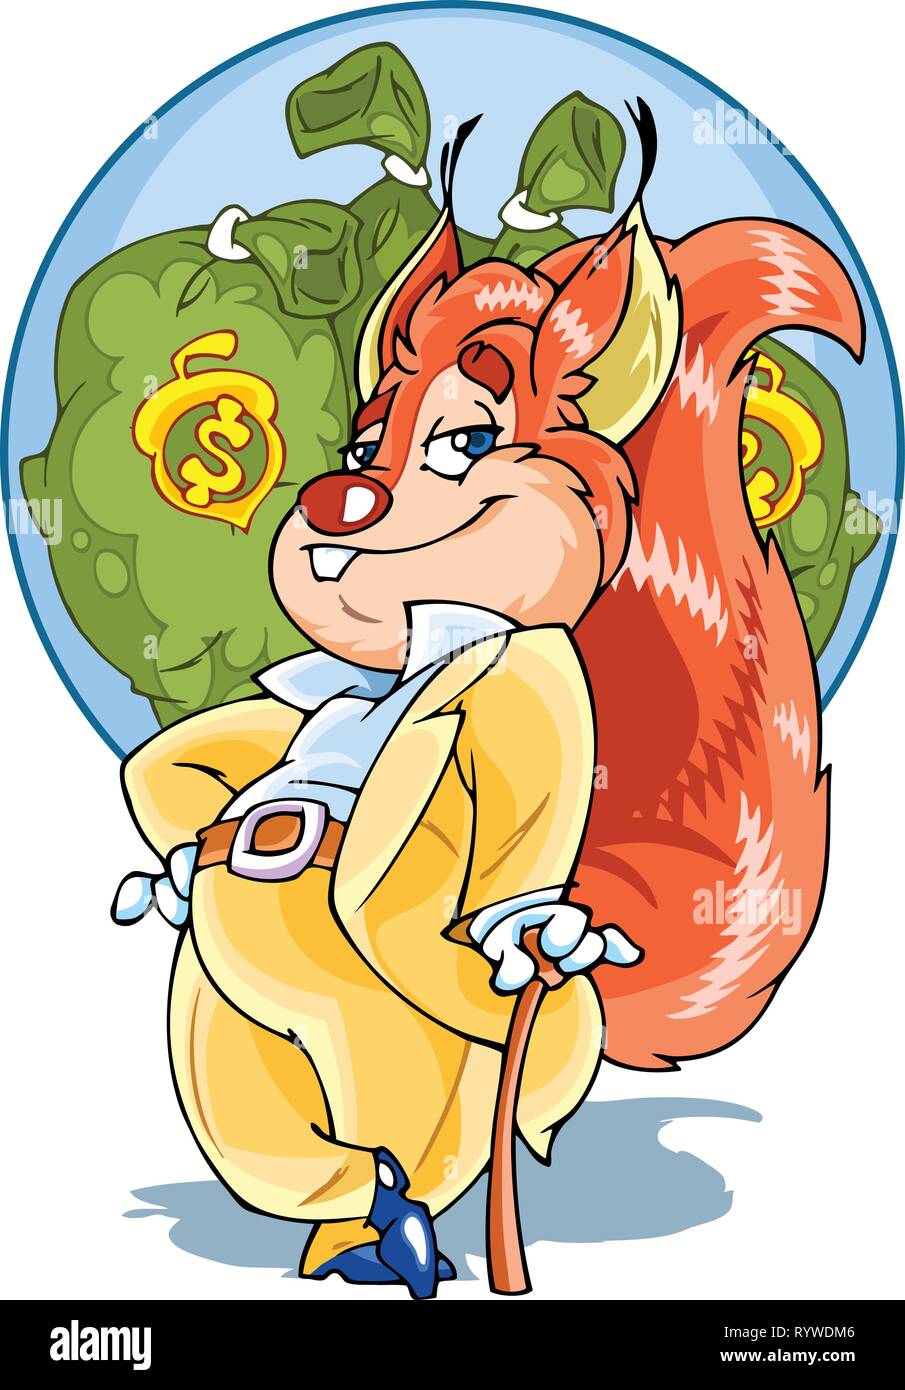 La figura mostra lo scoiattolo nella forma di un uomo in tuta e con una canna da zucchero. Borse di denaro sullo sfondo Illustrazione Vettoriale